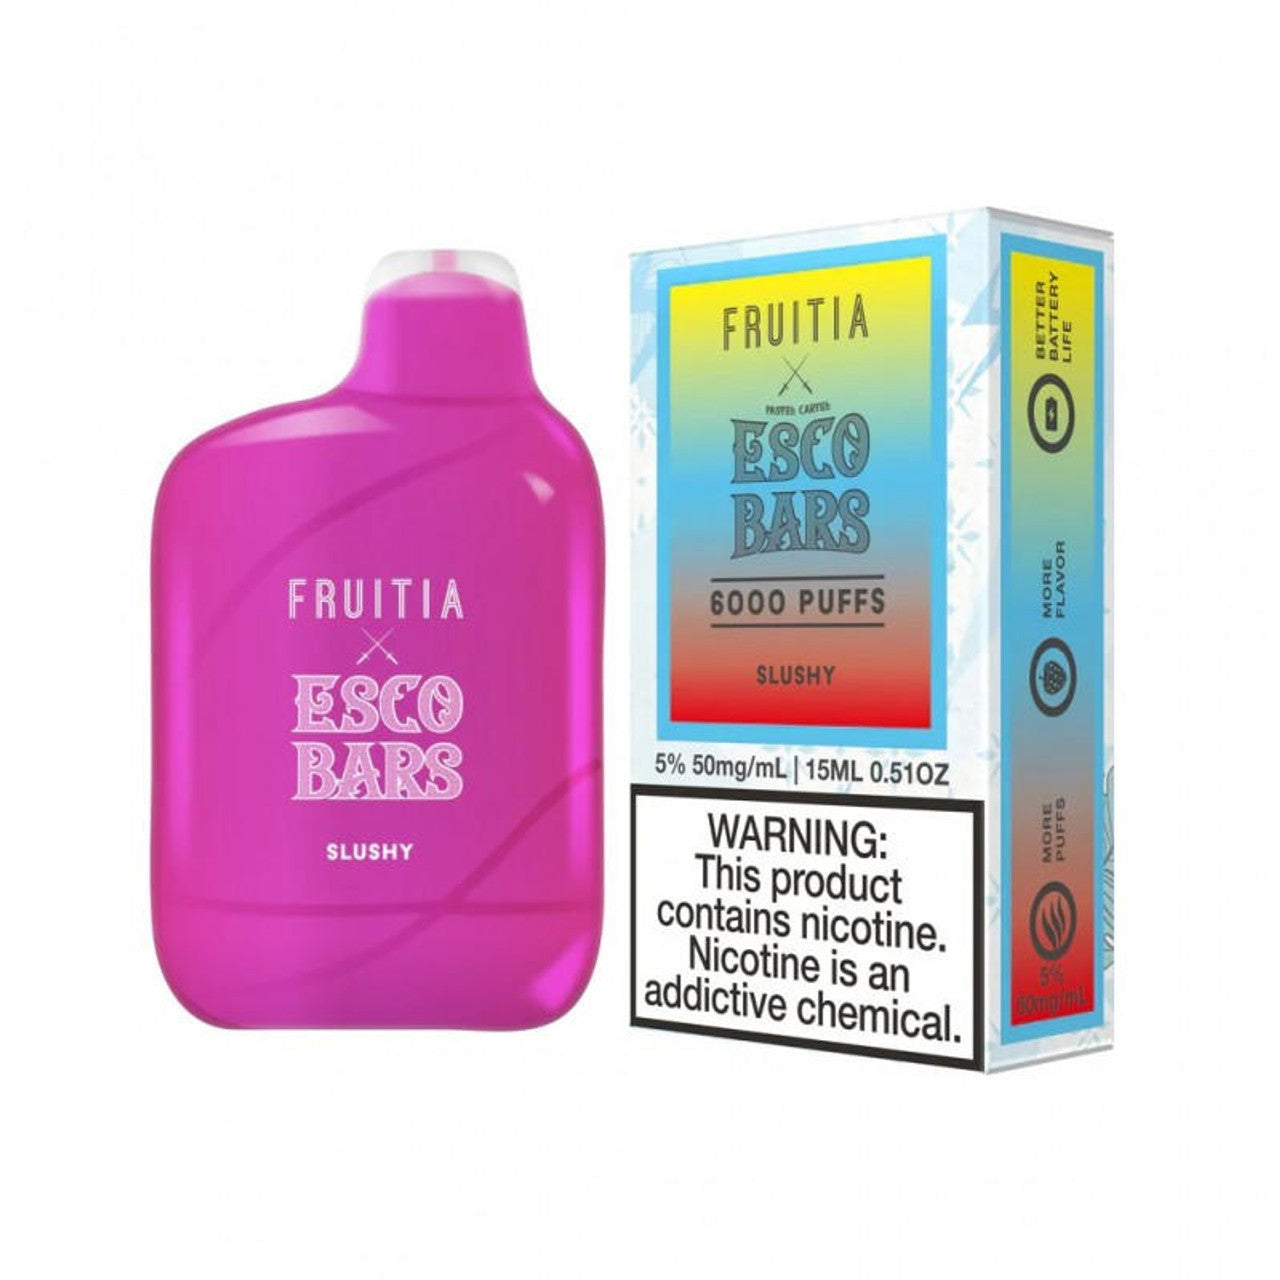 Fruitia X Esco Bars 6000 Puffs